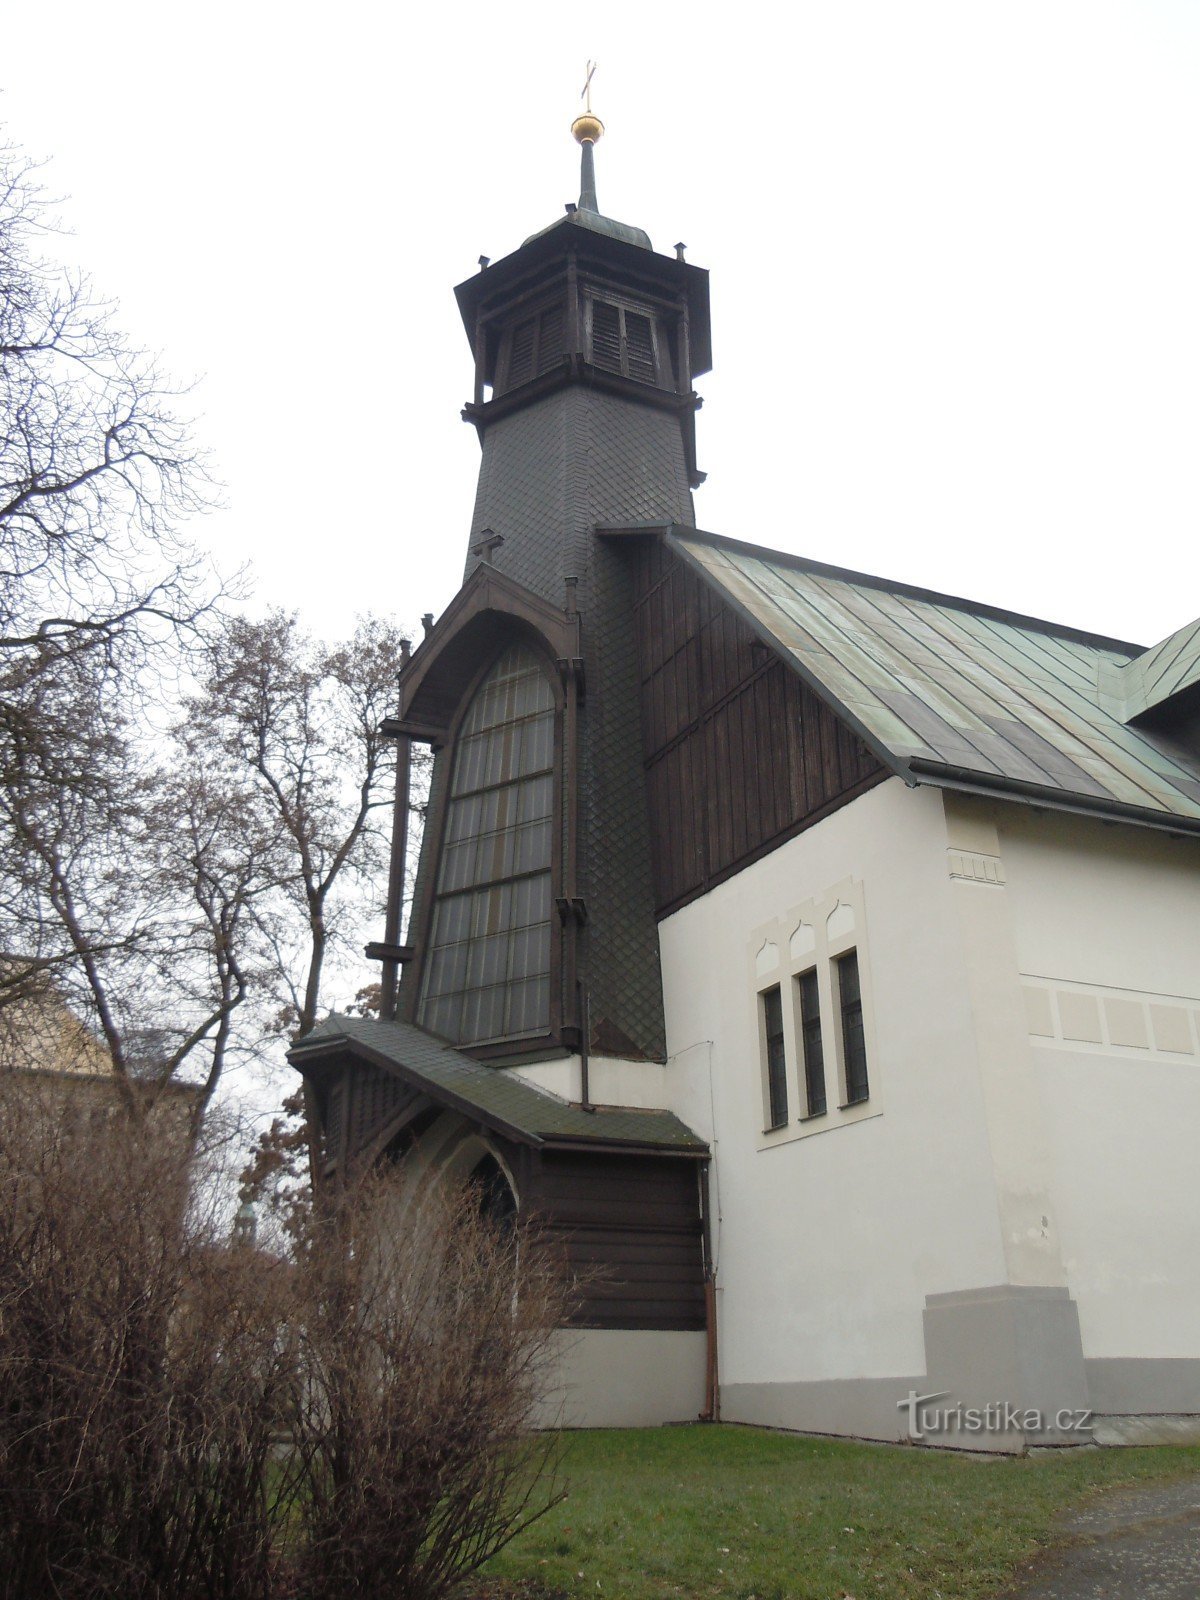 Libeň - Biserica Sf. Vojtěch